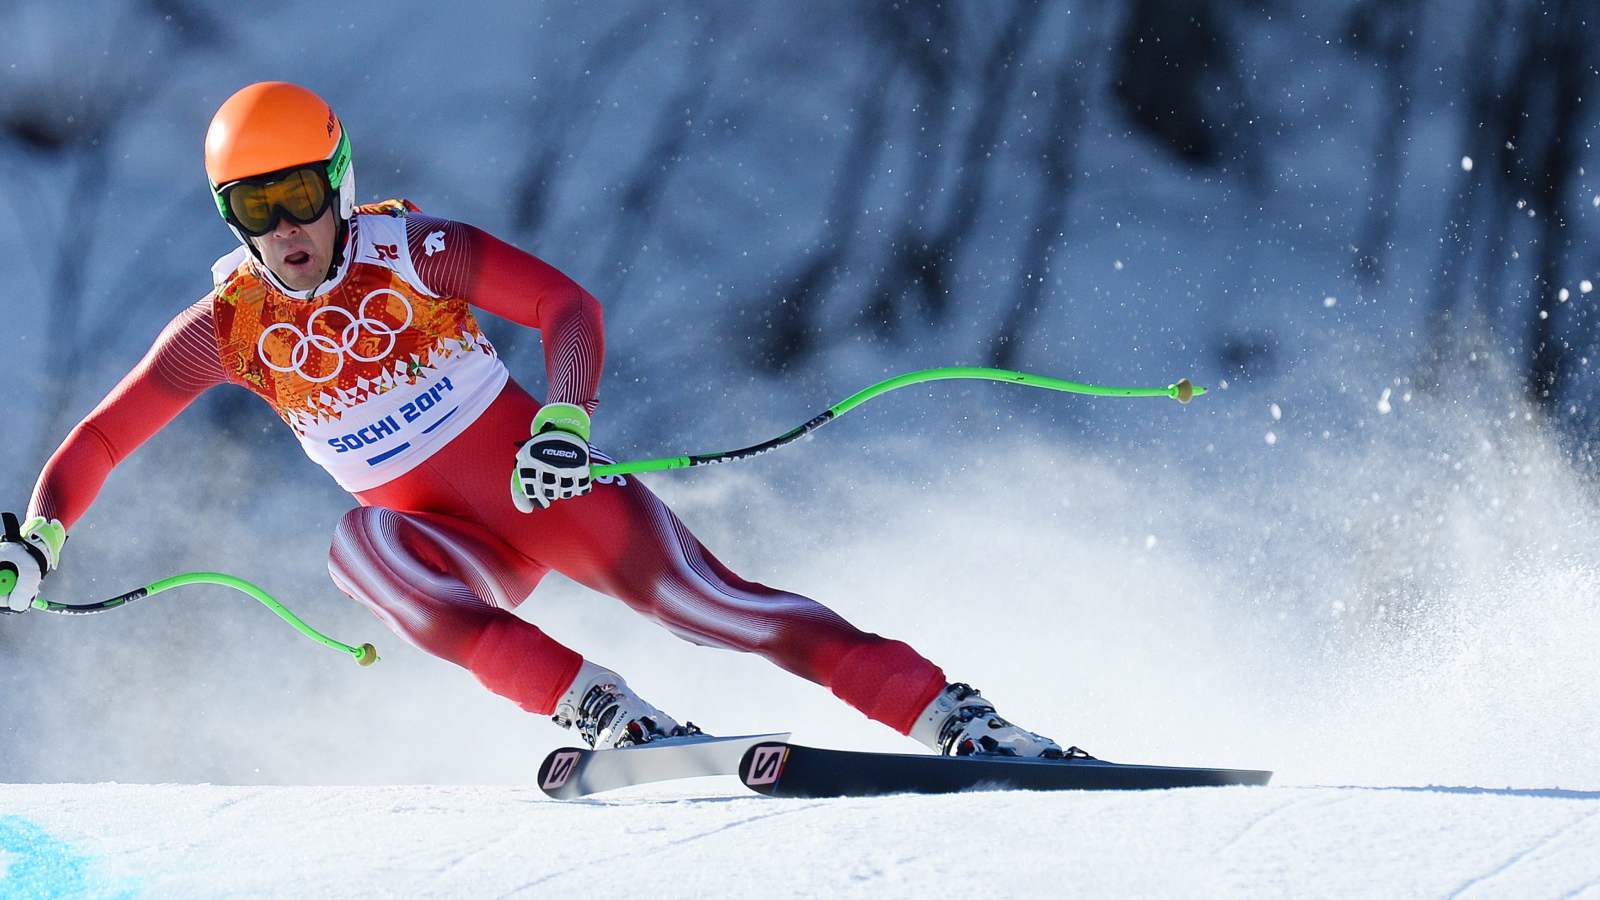 Обладатель серебряной медали в дисциплине горные лыжи Ивица Костелич из Хорватии